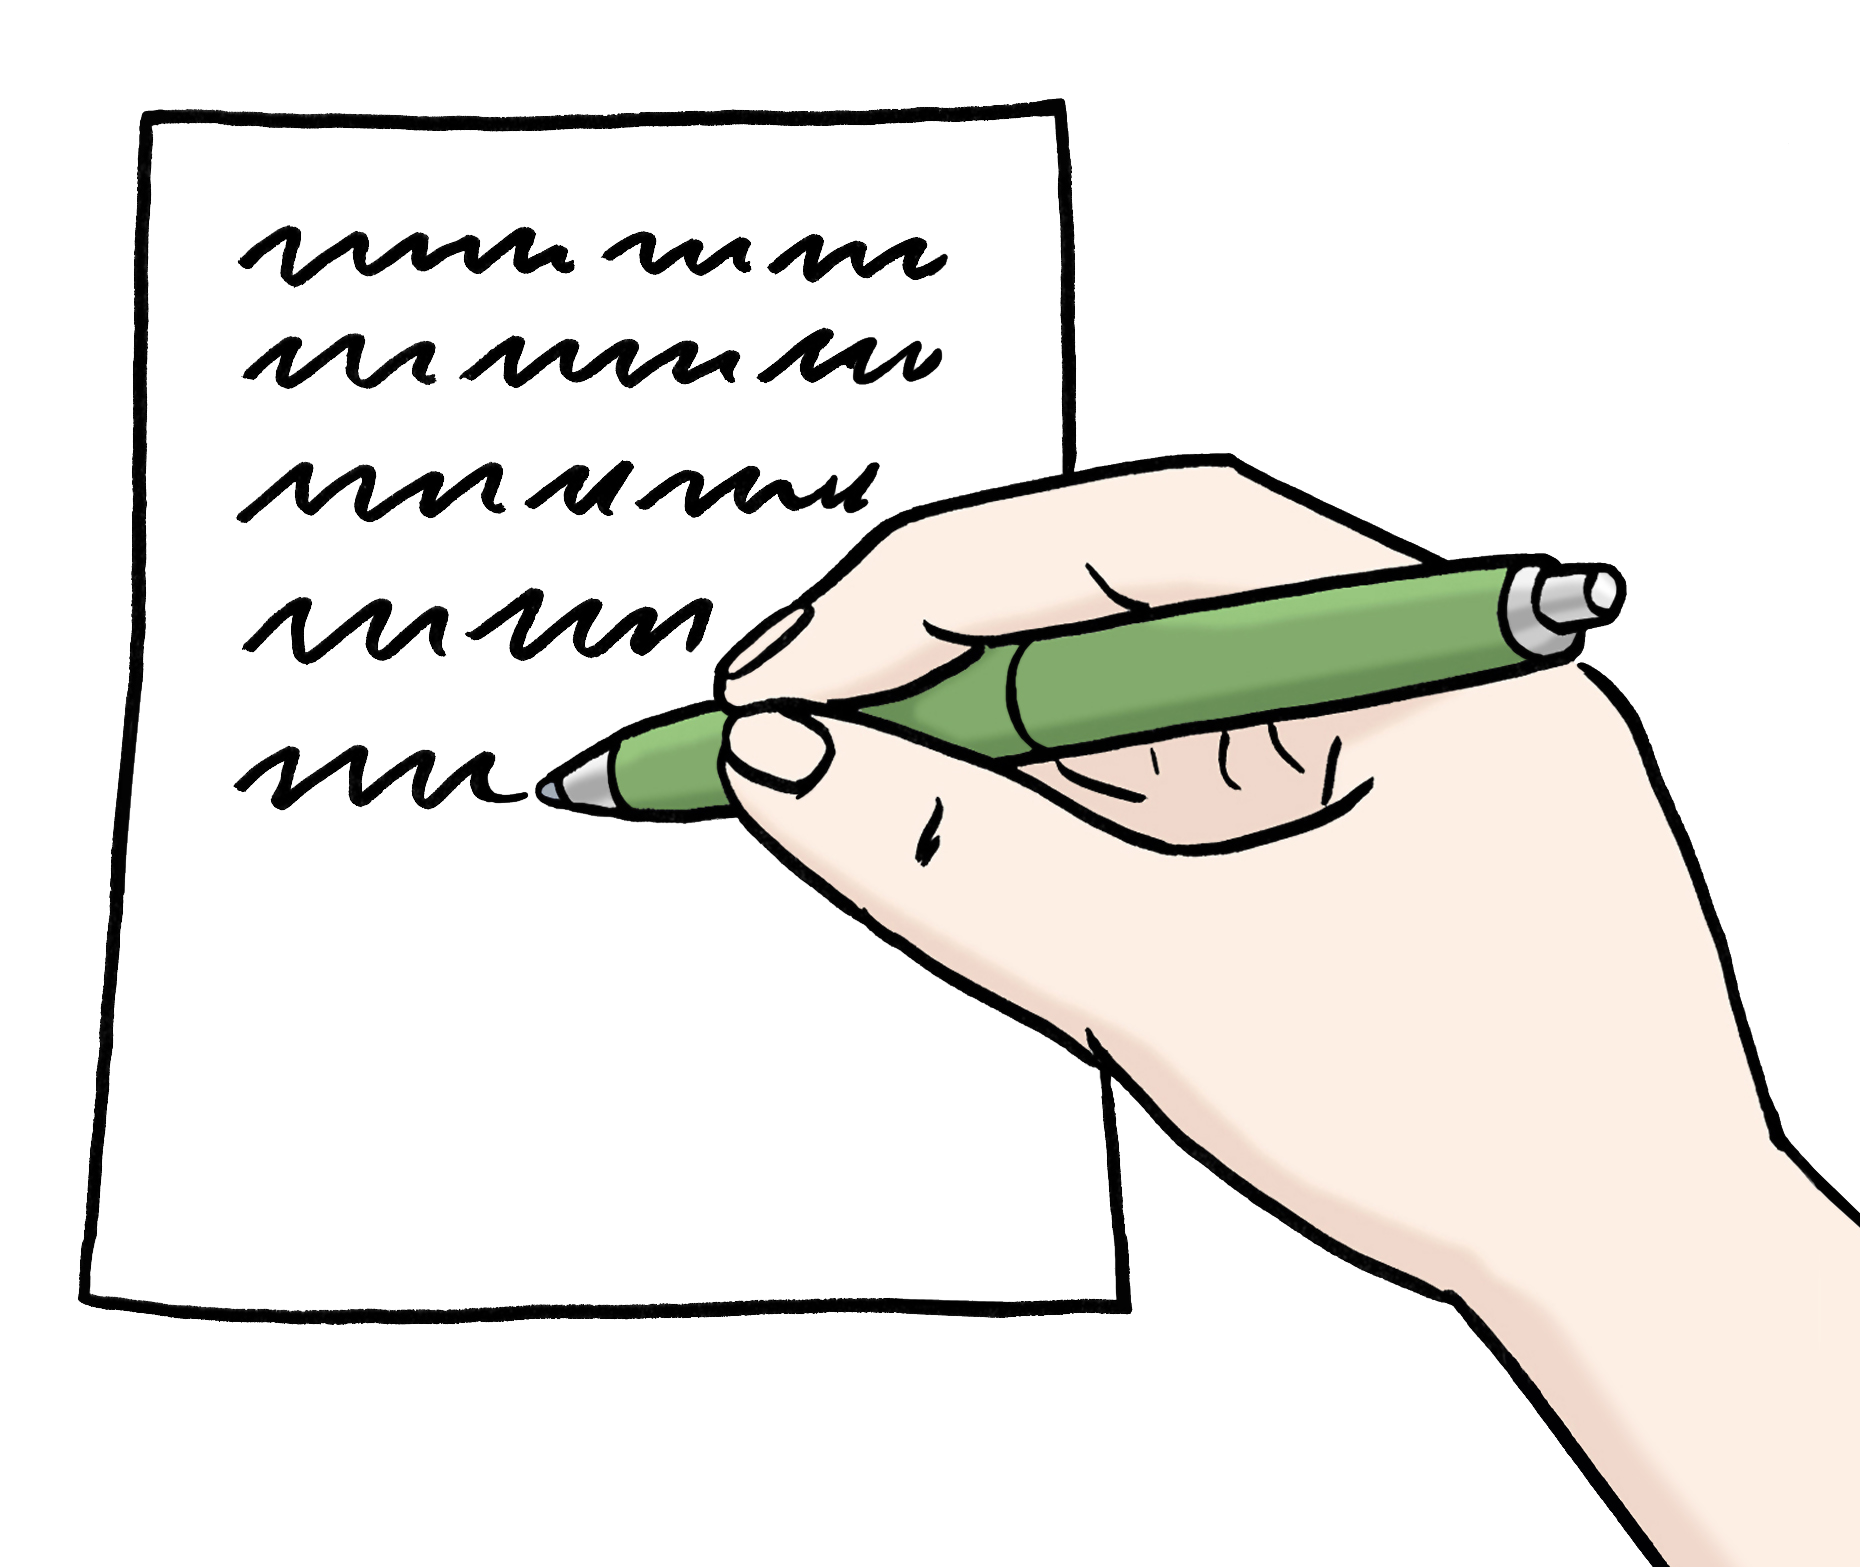 Leichte Sprache Bild: Eine Hand schreibt etwas auf einen Zettel